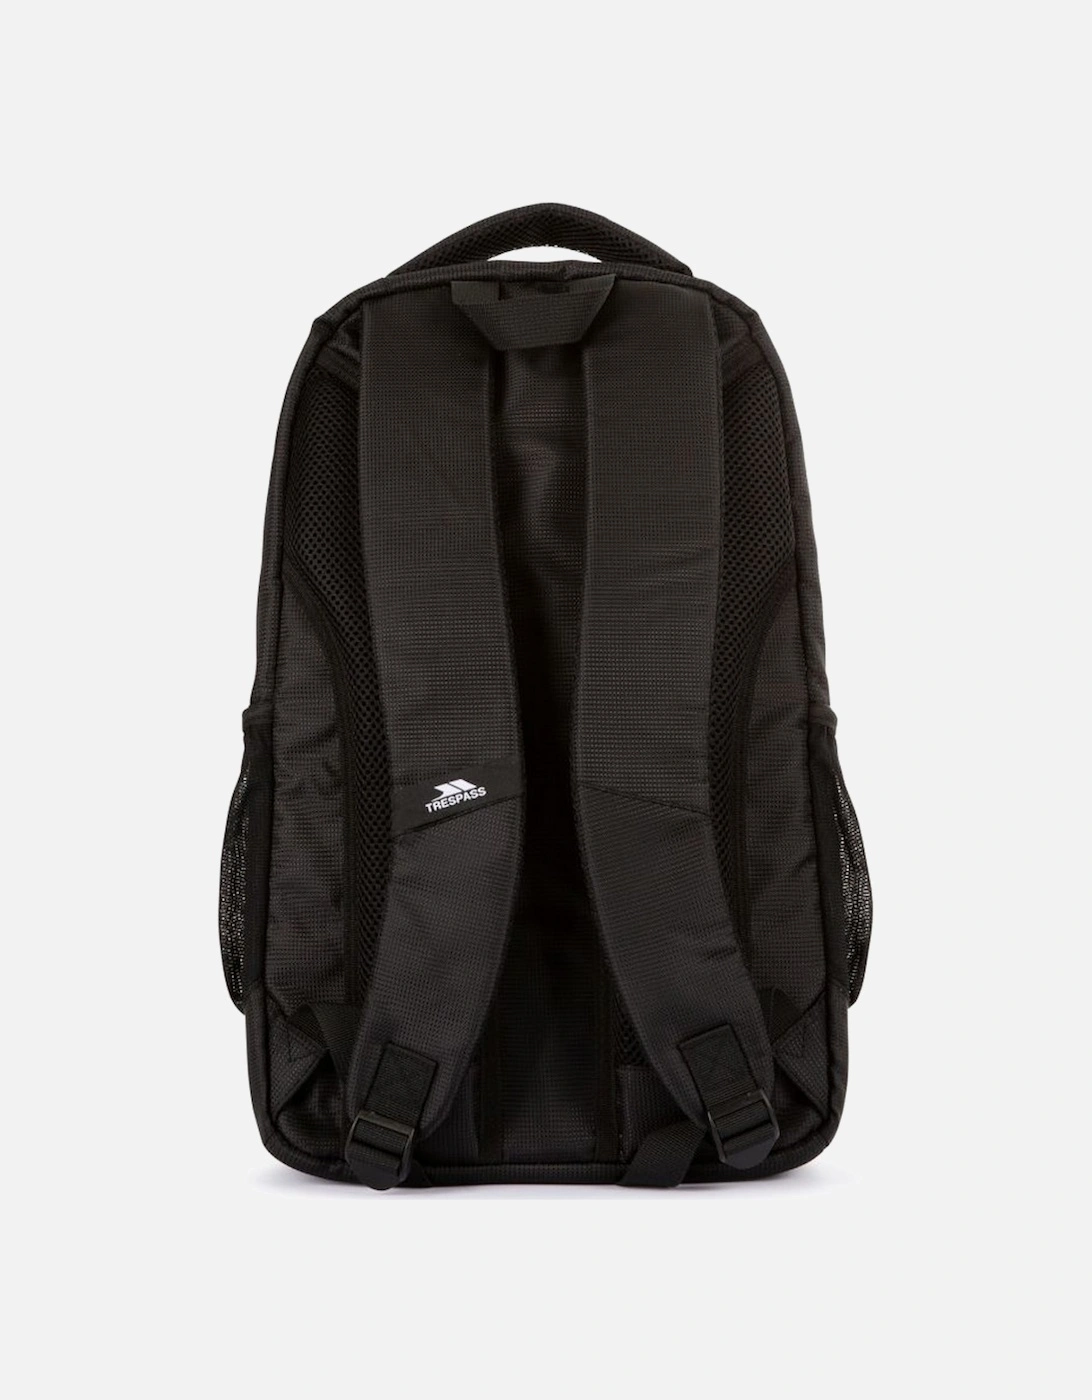 Thain Backpack